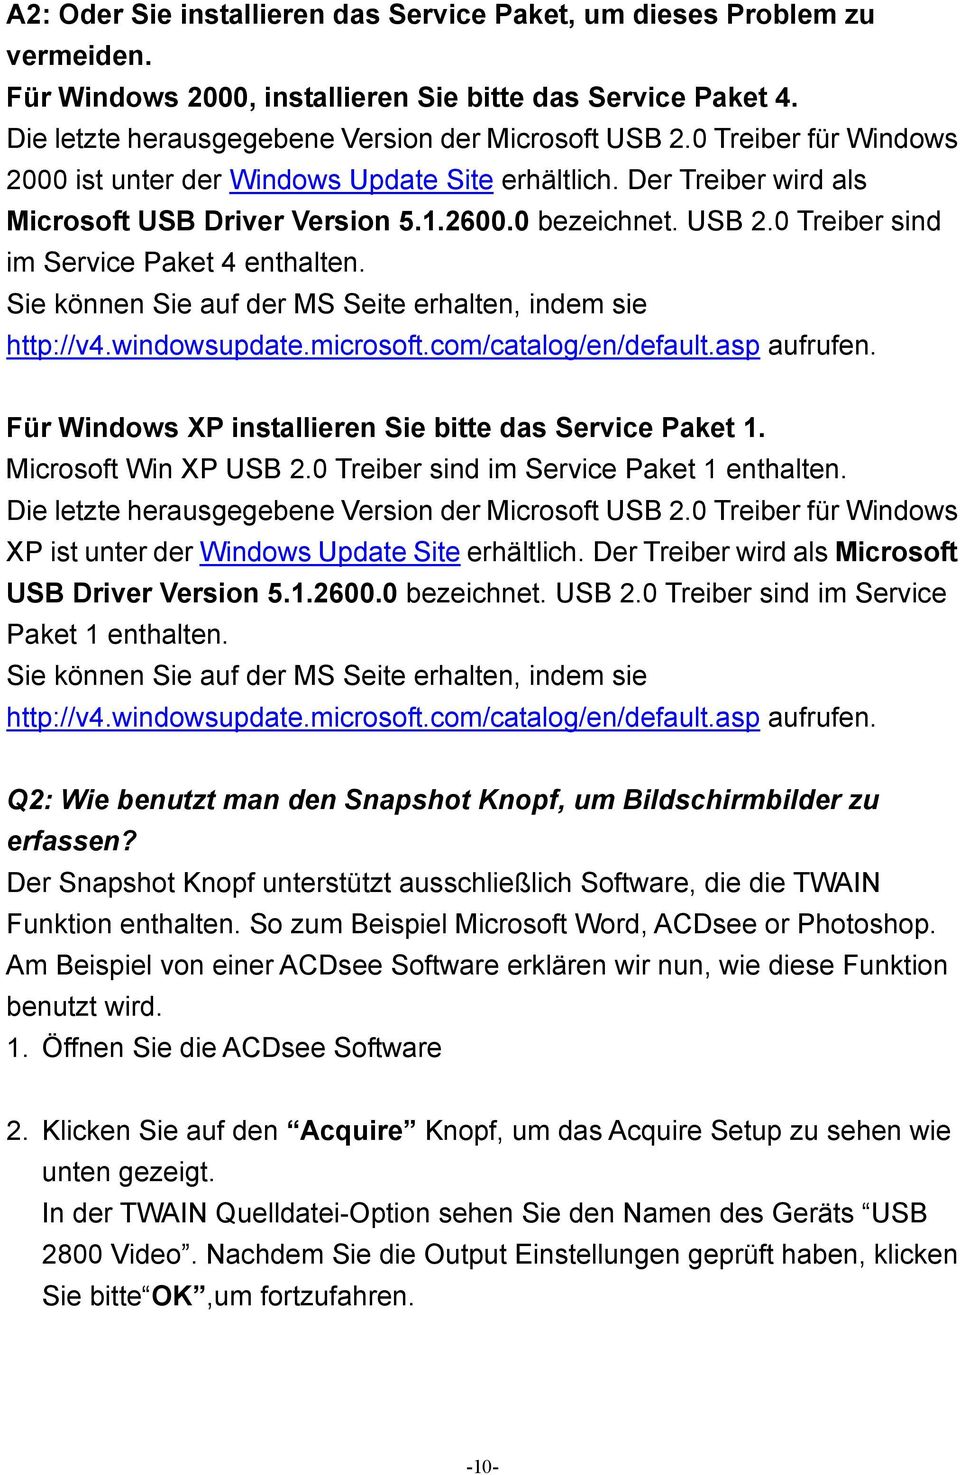 Sie können Sie auf der MS Seite erhalten, indem sie http://v4.windowsupdate.microsoft.com/catalog/en/default.asp aufrufen. Für Windows XP installieren Sie bitte das Service Paket 1.